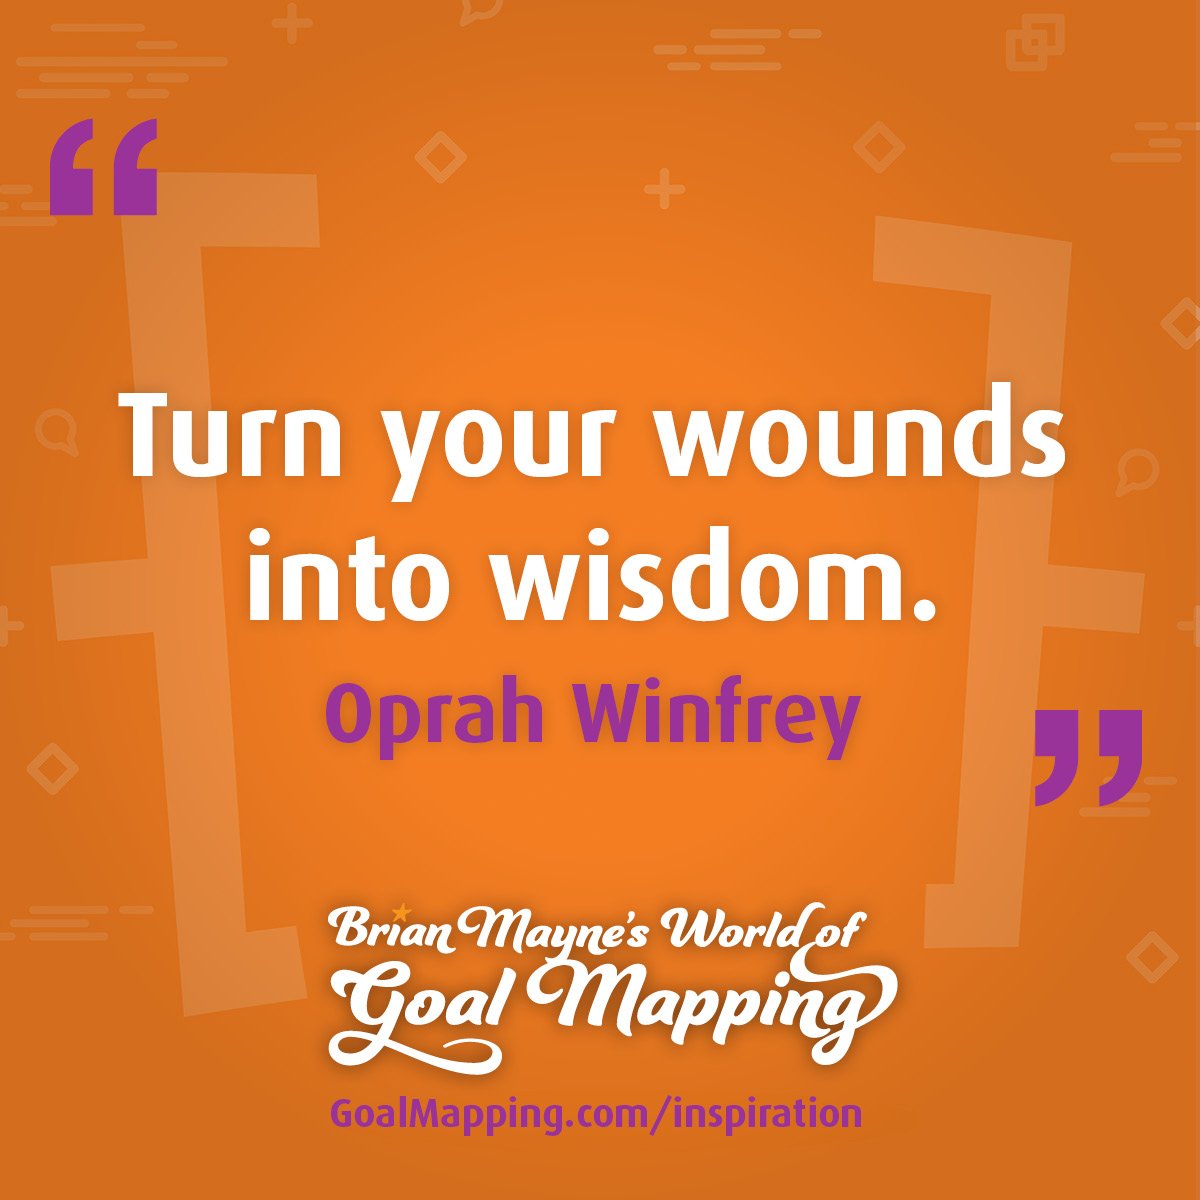 "Turn your wounds into wisdom." Oprah Winfrey